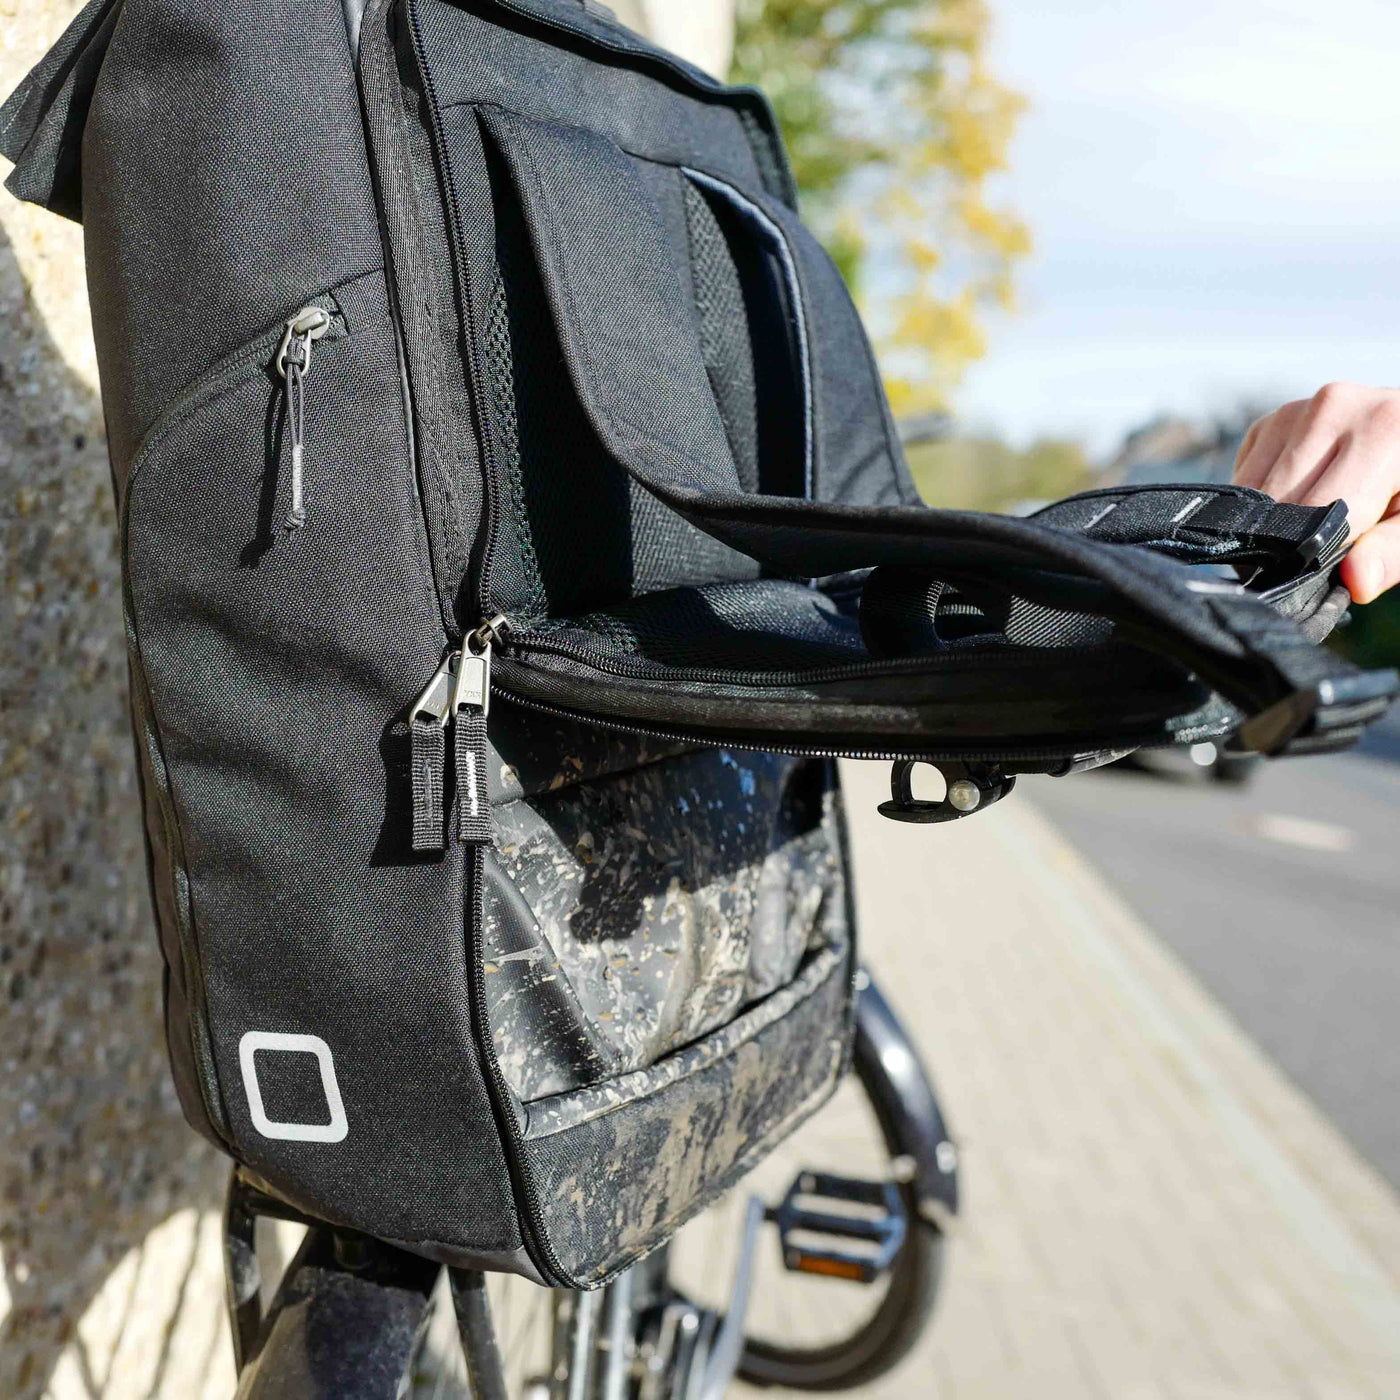 Das innovative und patentierte Klappsystem von 2bag hat einen integrierten Schmutzschutz. Wenn 2bag als Fahrradtasche genutzt wird sind Träger und Rückenseite des Rucksacks vor Schmutz geschützt. Auch bei schlechtem Wetter kannst du 2bag als nutzen.